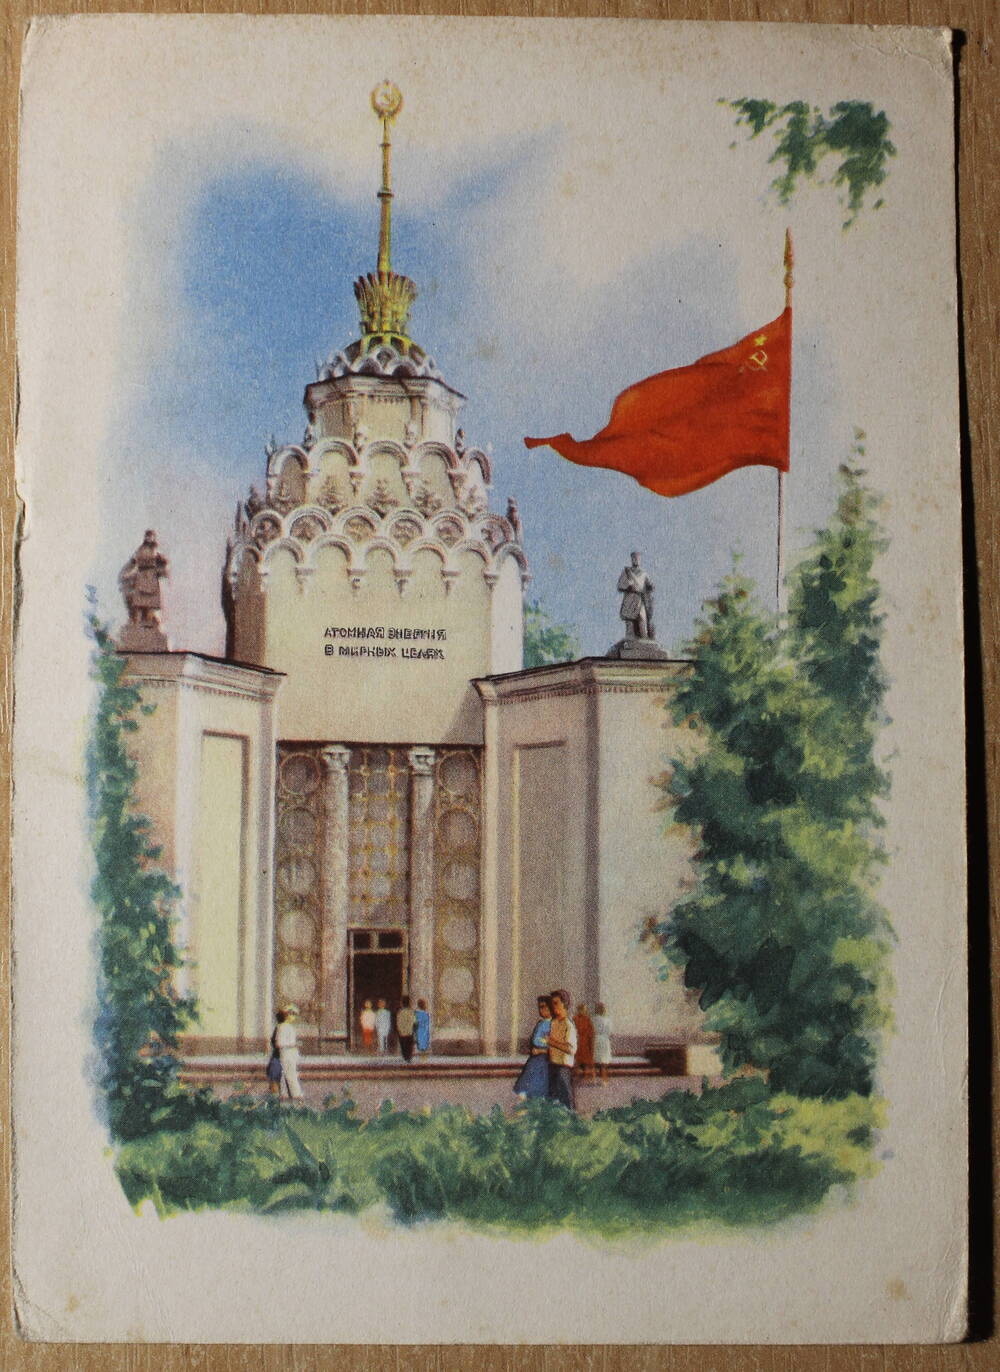 Фотография. Коллекция открыток с достопримечательностями разных городов. Москва.  ВДНХ. Павильон Атомная энергия в мирных целях